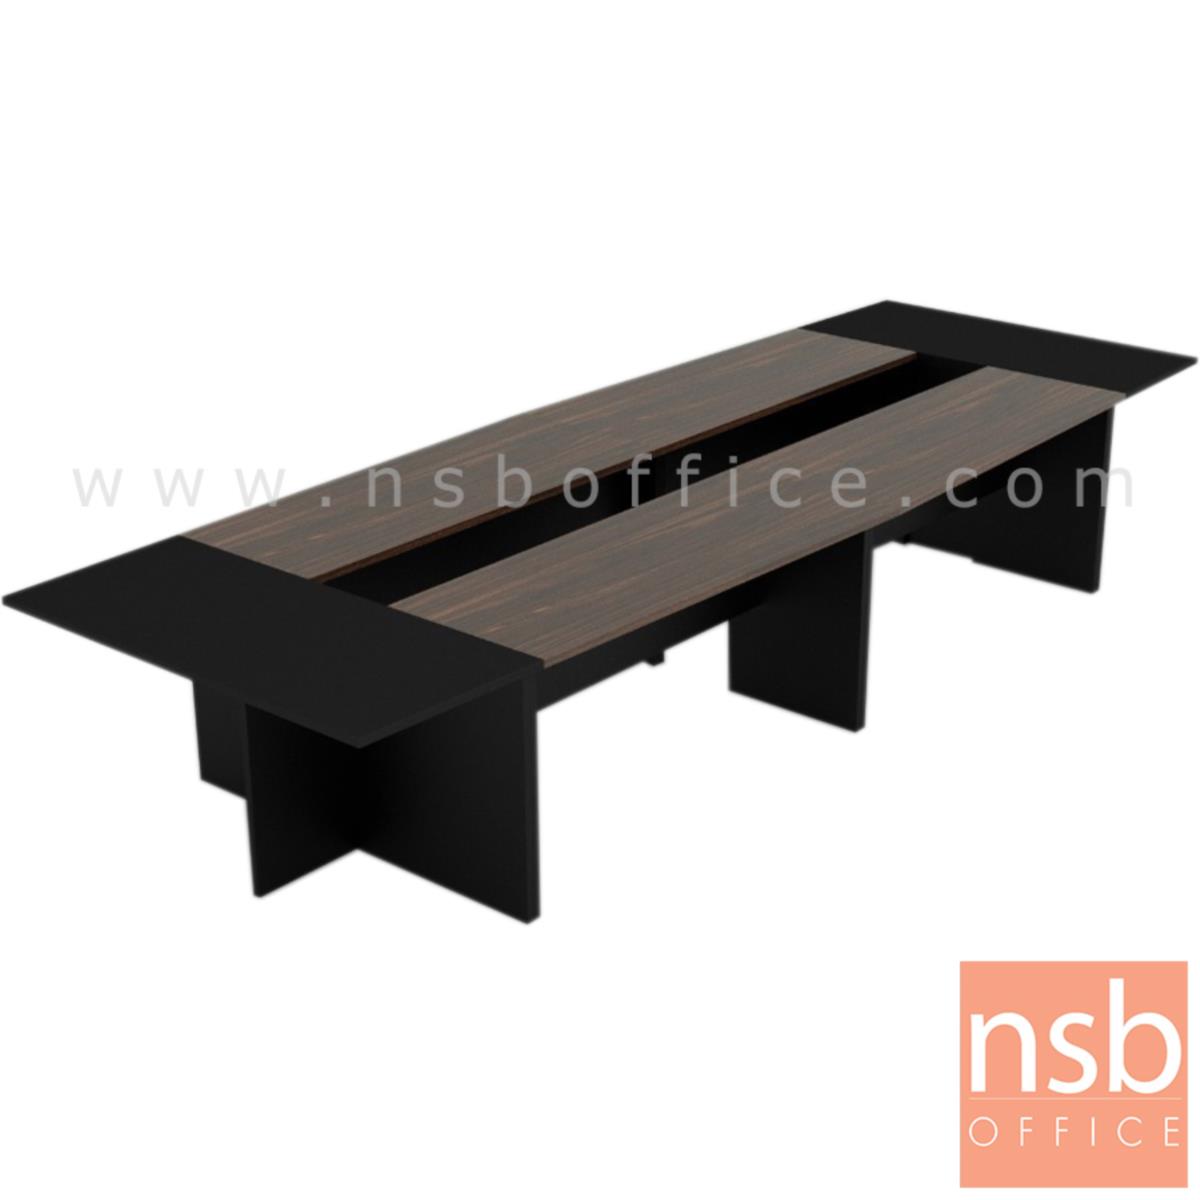 โต๊ะประชุม รุ่น BADEN (บาเด็น) 8 ,10 ที่นั่ง ขนาด 420W ,480W cm. เมลามีน สีดำ-มอคค่าวอลนัท